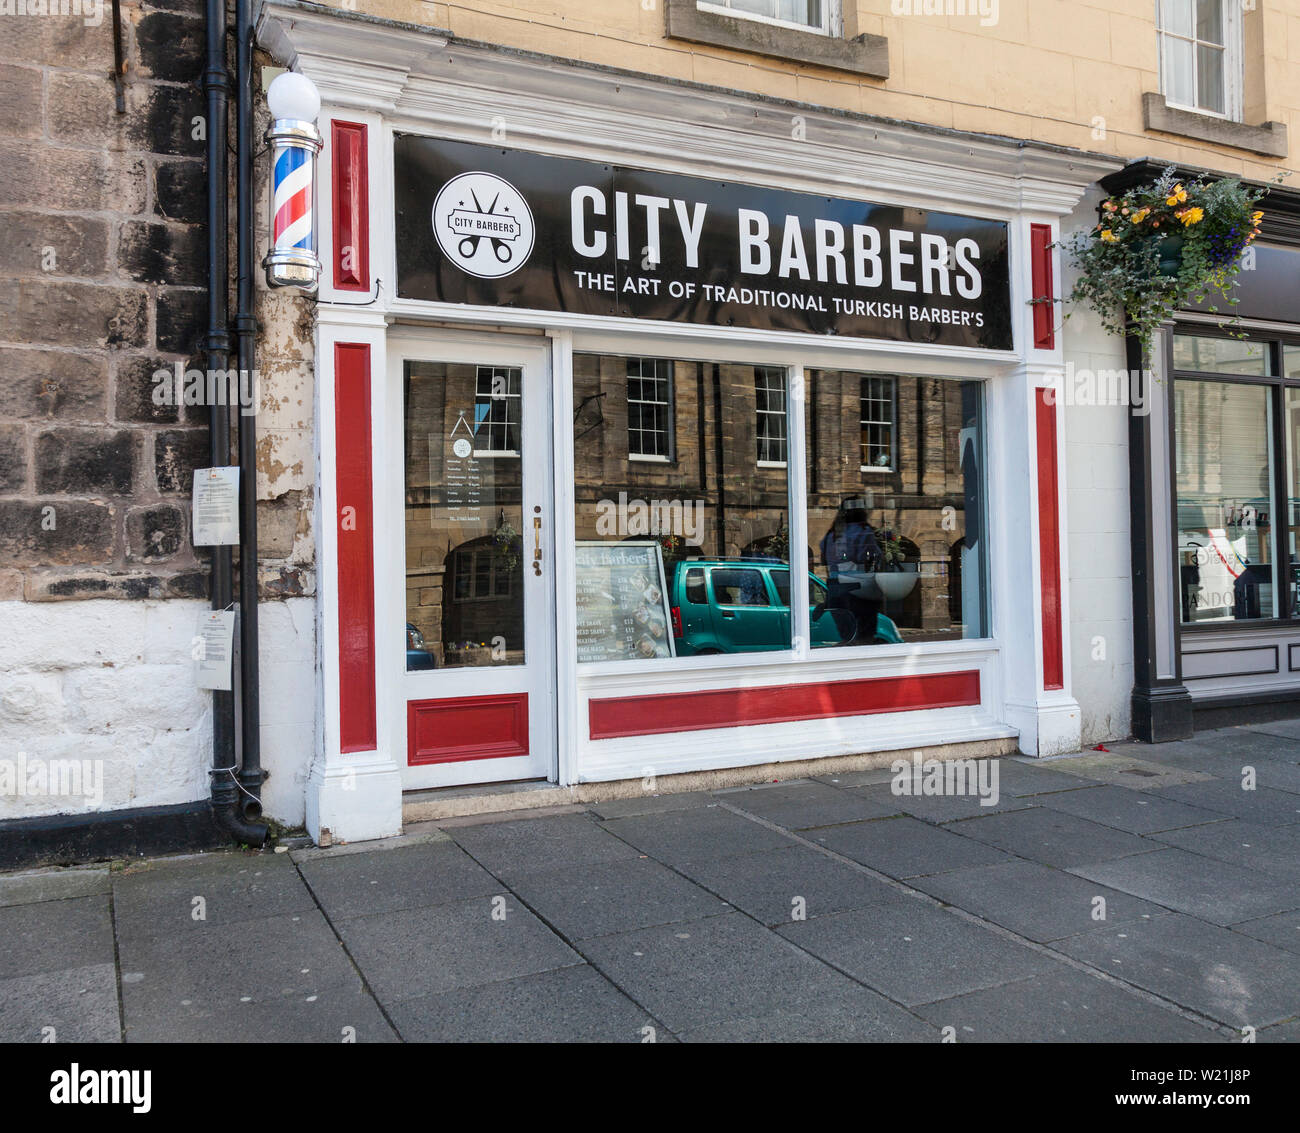 City Barbers shop in Alnwick,Northumberland,England,UK Stock Photo